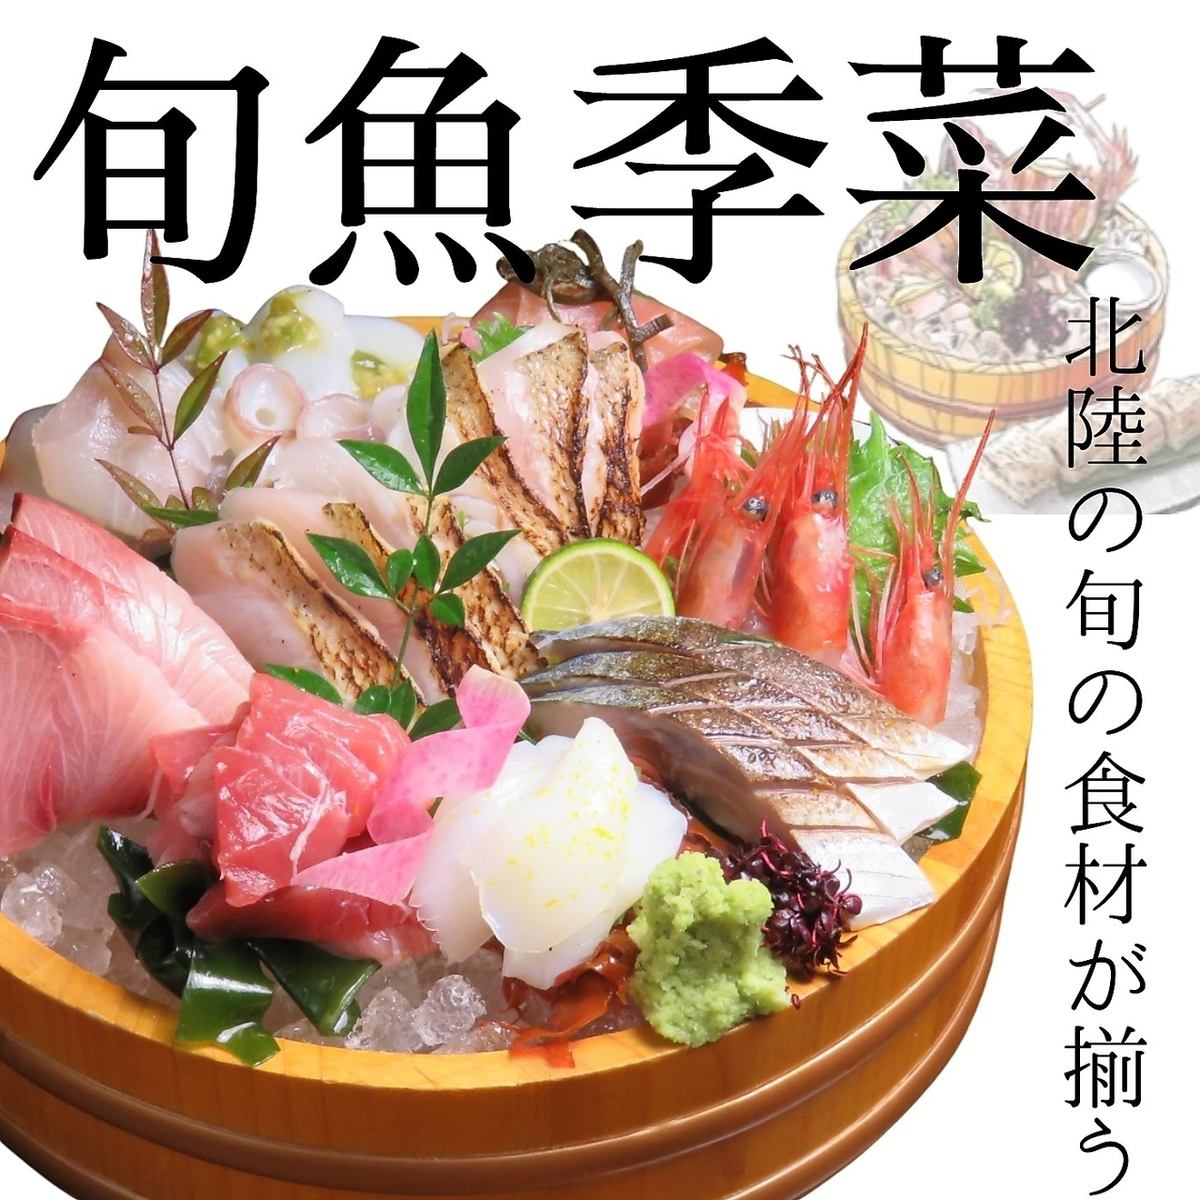 您可以享用厨师在市场购买的能登金泽早晨捕获的鲜鱼生鱼片。